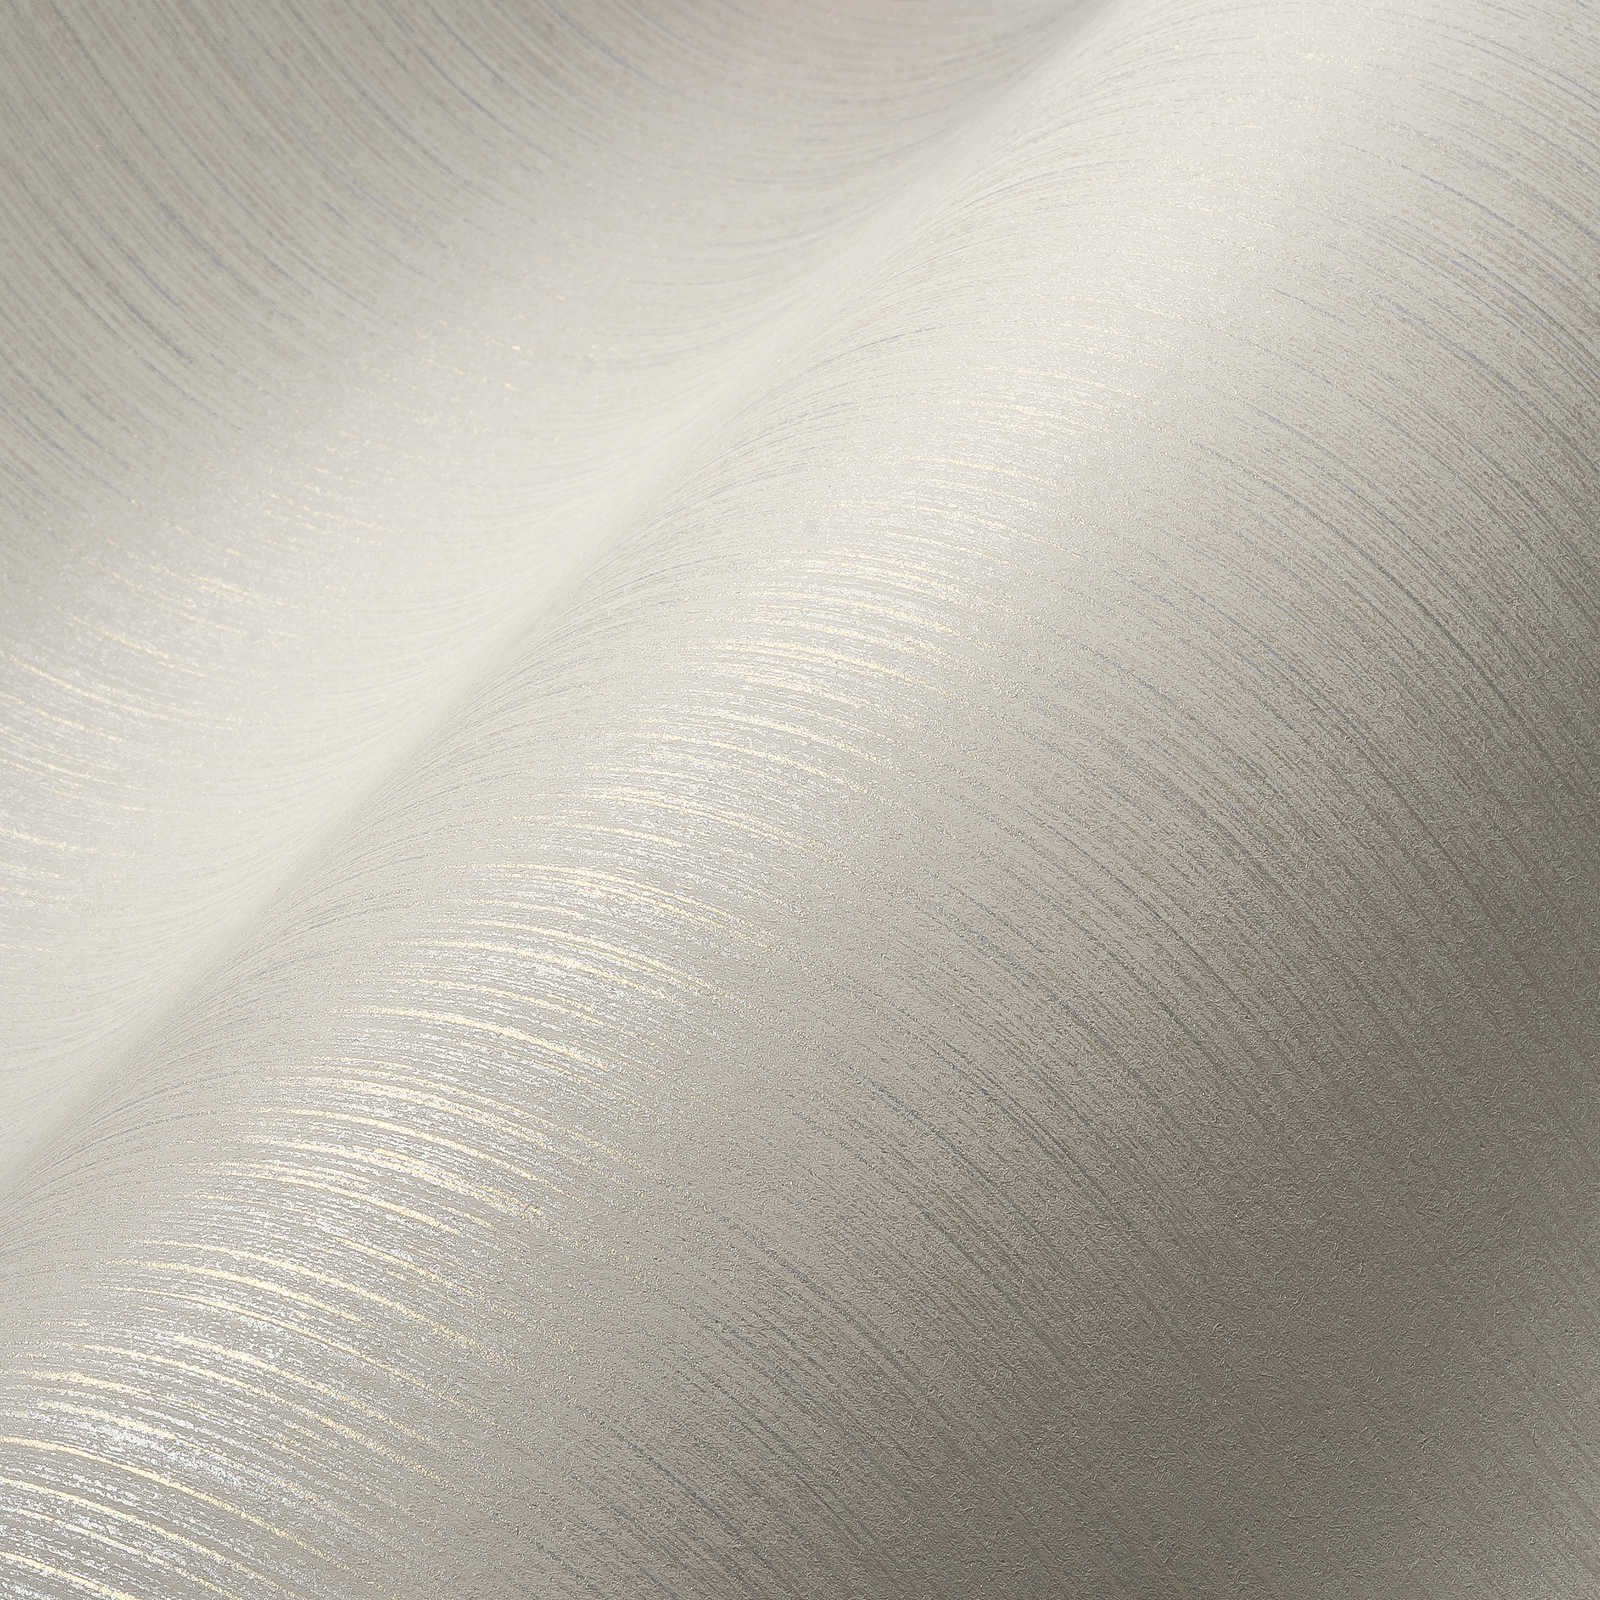             Carta da parati glitterata con design foderato e aspetto seta selvaggia - bianco
        